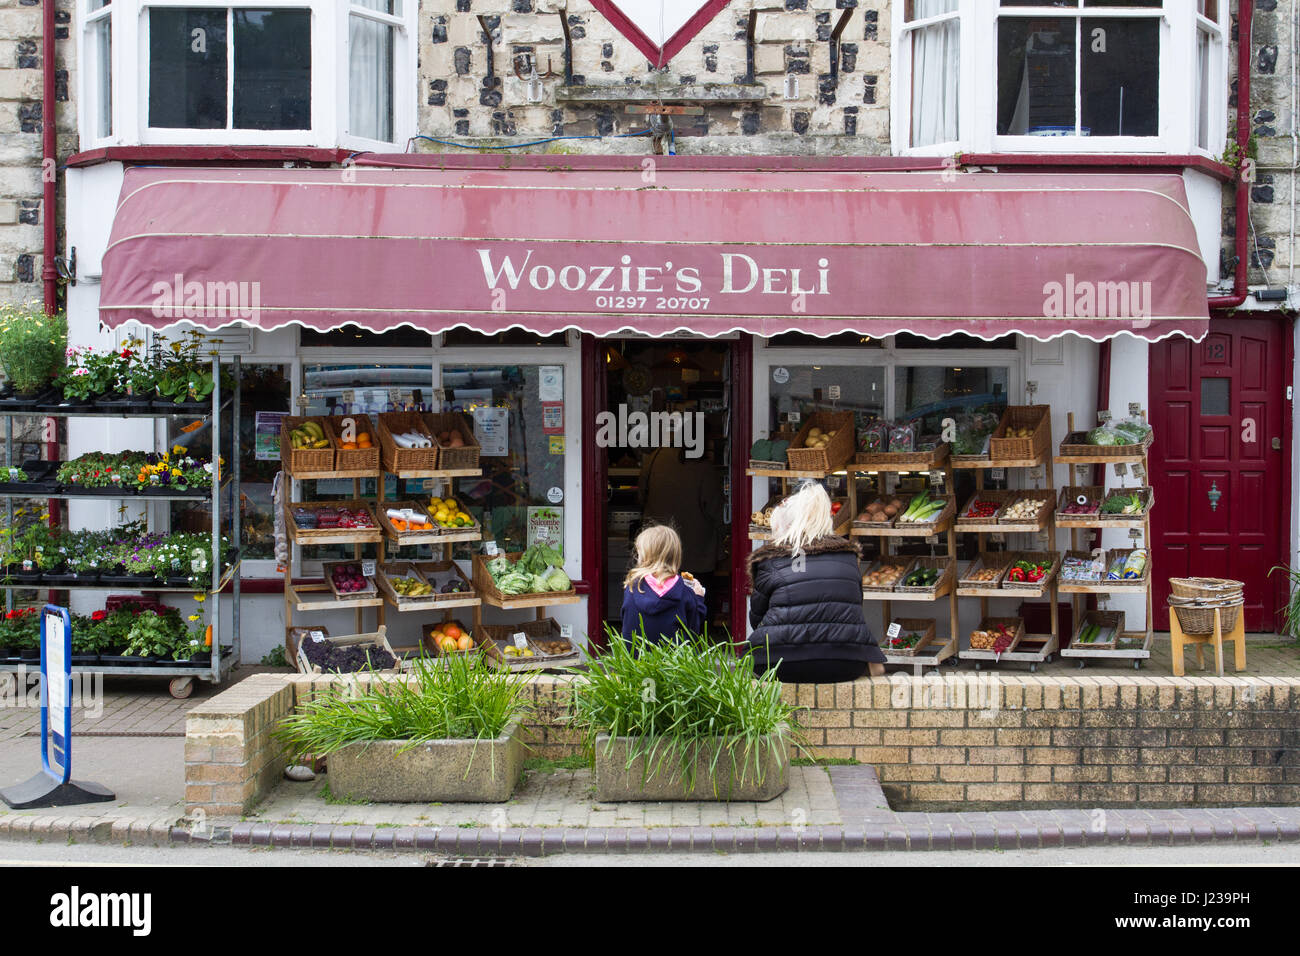 BIER, DEVON, UK - 15. APRIL 2017. Ein lokales Geschäft in Form von Delikatessen bekannt als Woosie Deli auf den Straßen von Bier in Devon, England. Stockfoto